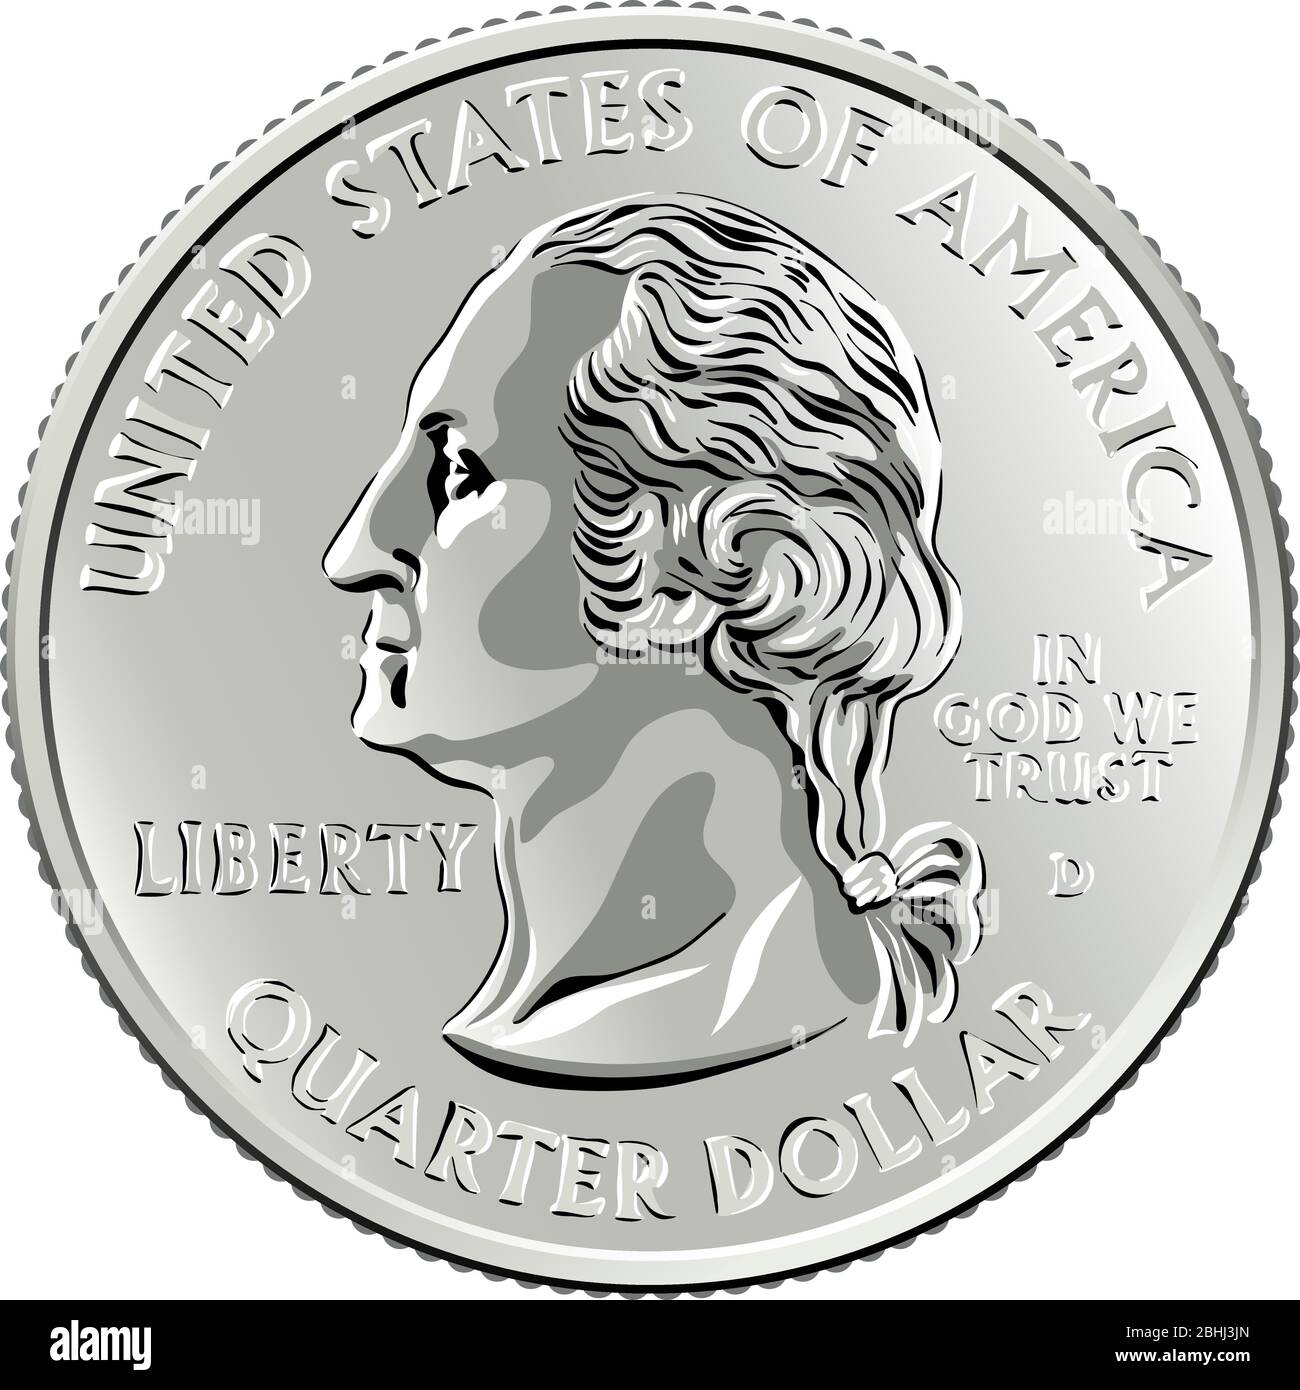 US-Geld, Washington Viertel Dollar oder 25-Cent-Silbermünze, erste US-Präsident Profil George Washington auf der Vorderseite Stock Vektor